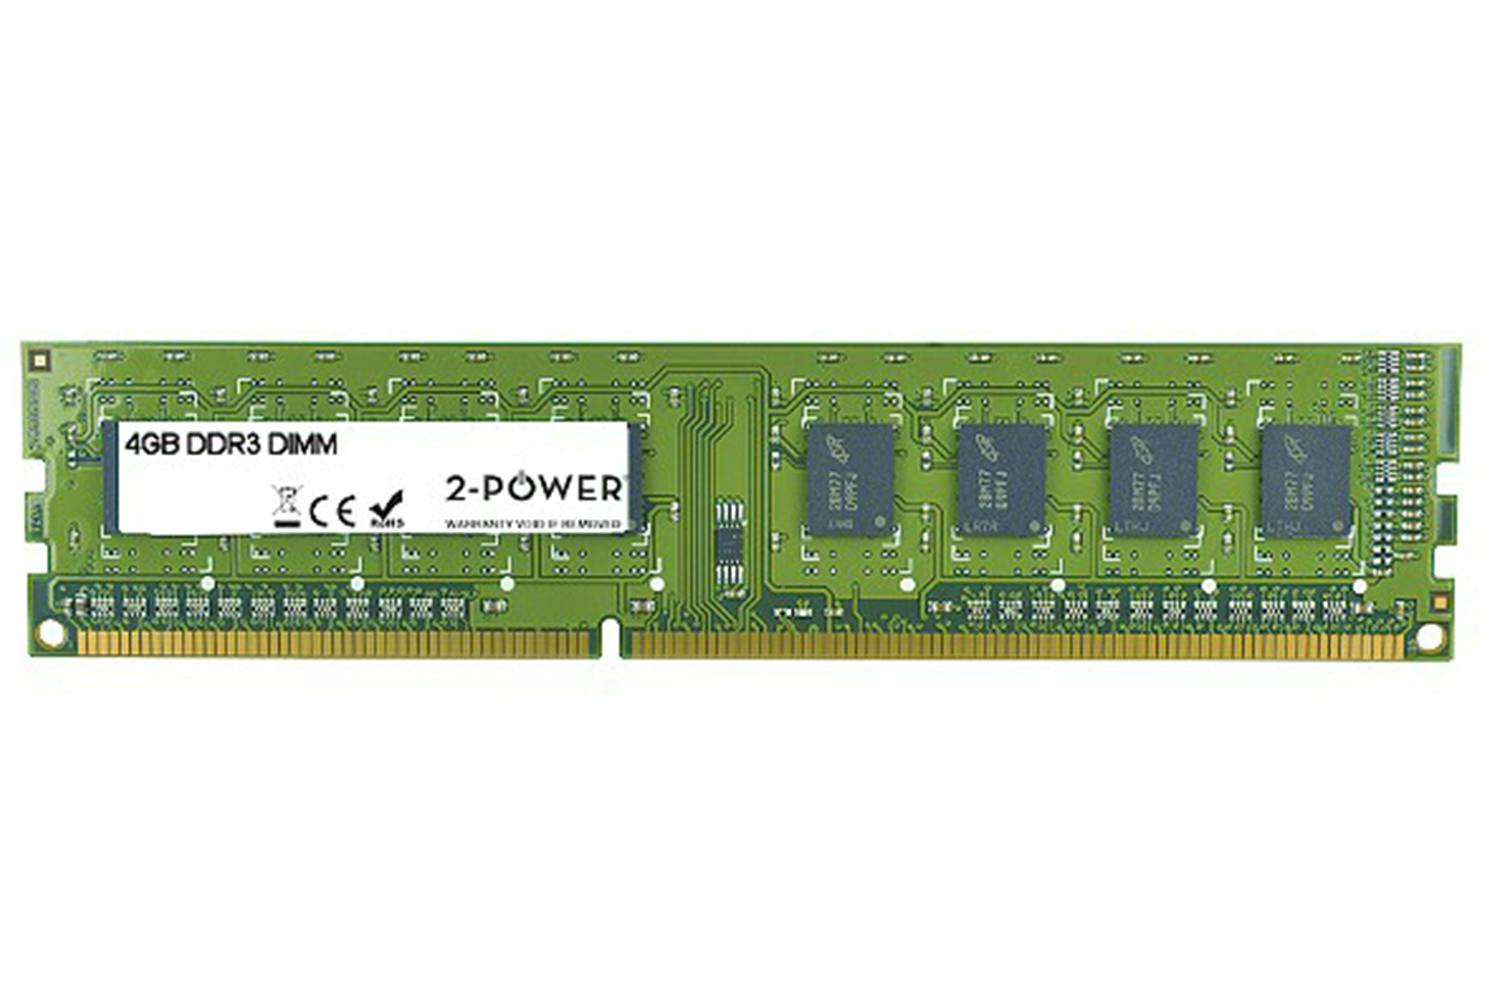 2-Power MultiSpeed DIMM Memory Module